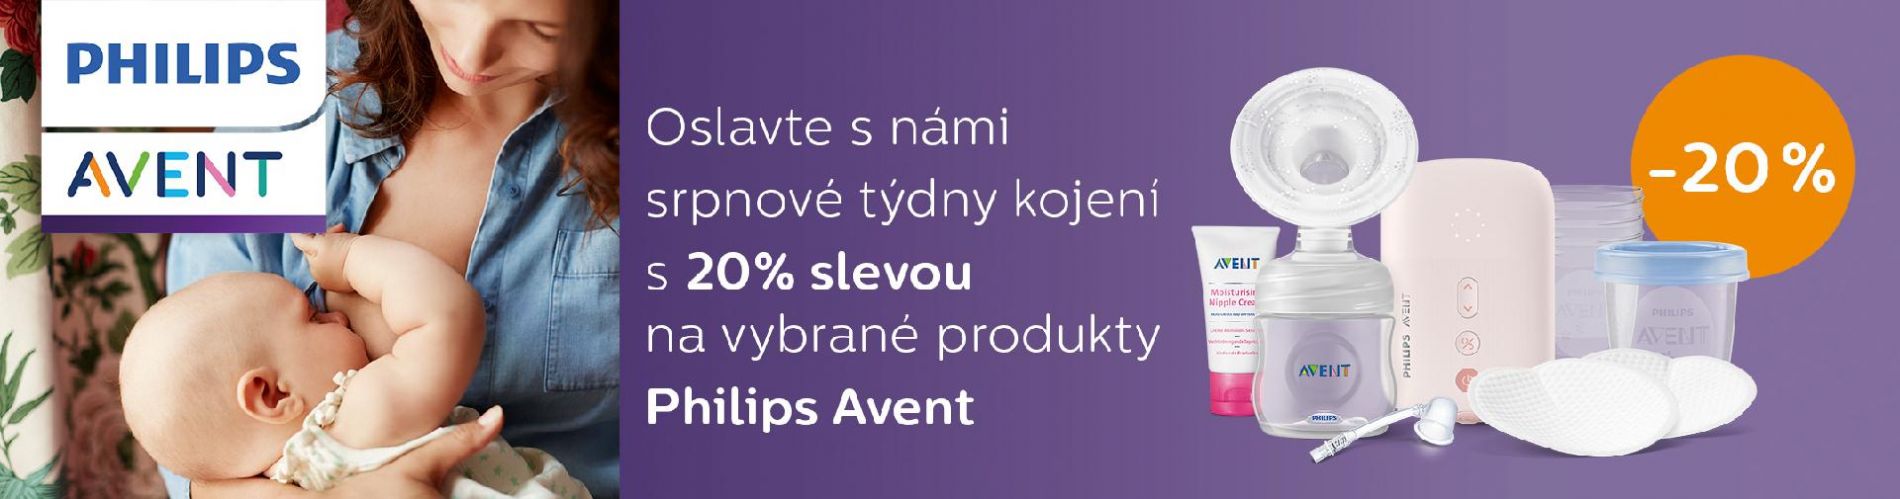 Srpnové slevy s Philips Avent 